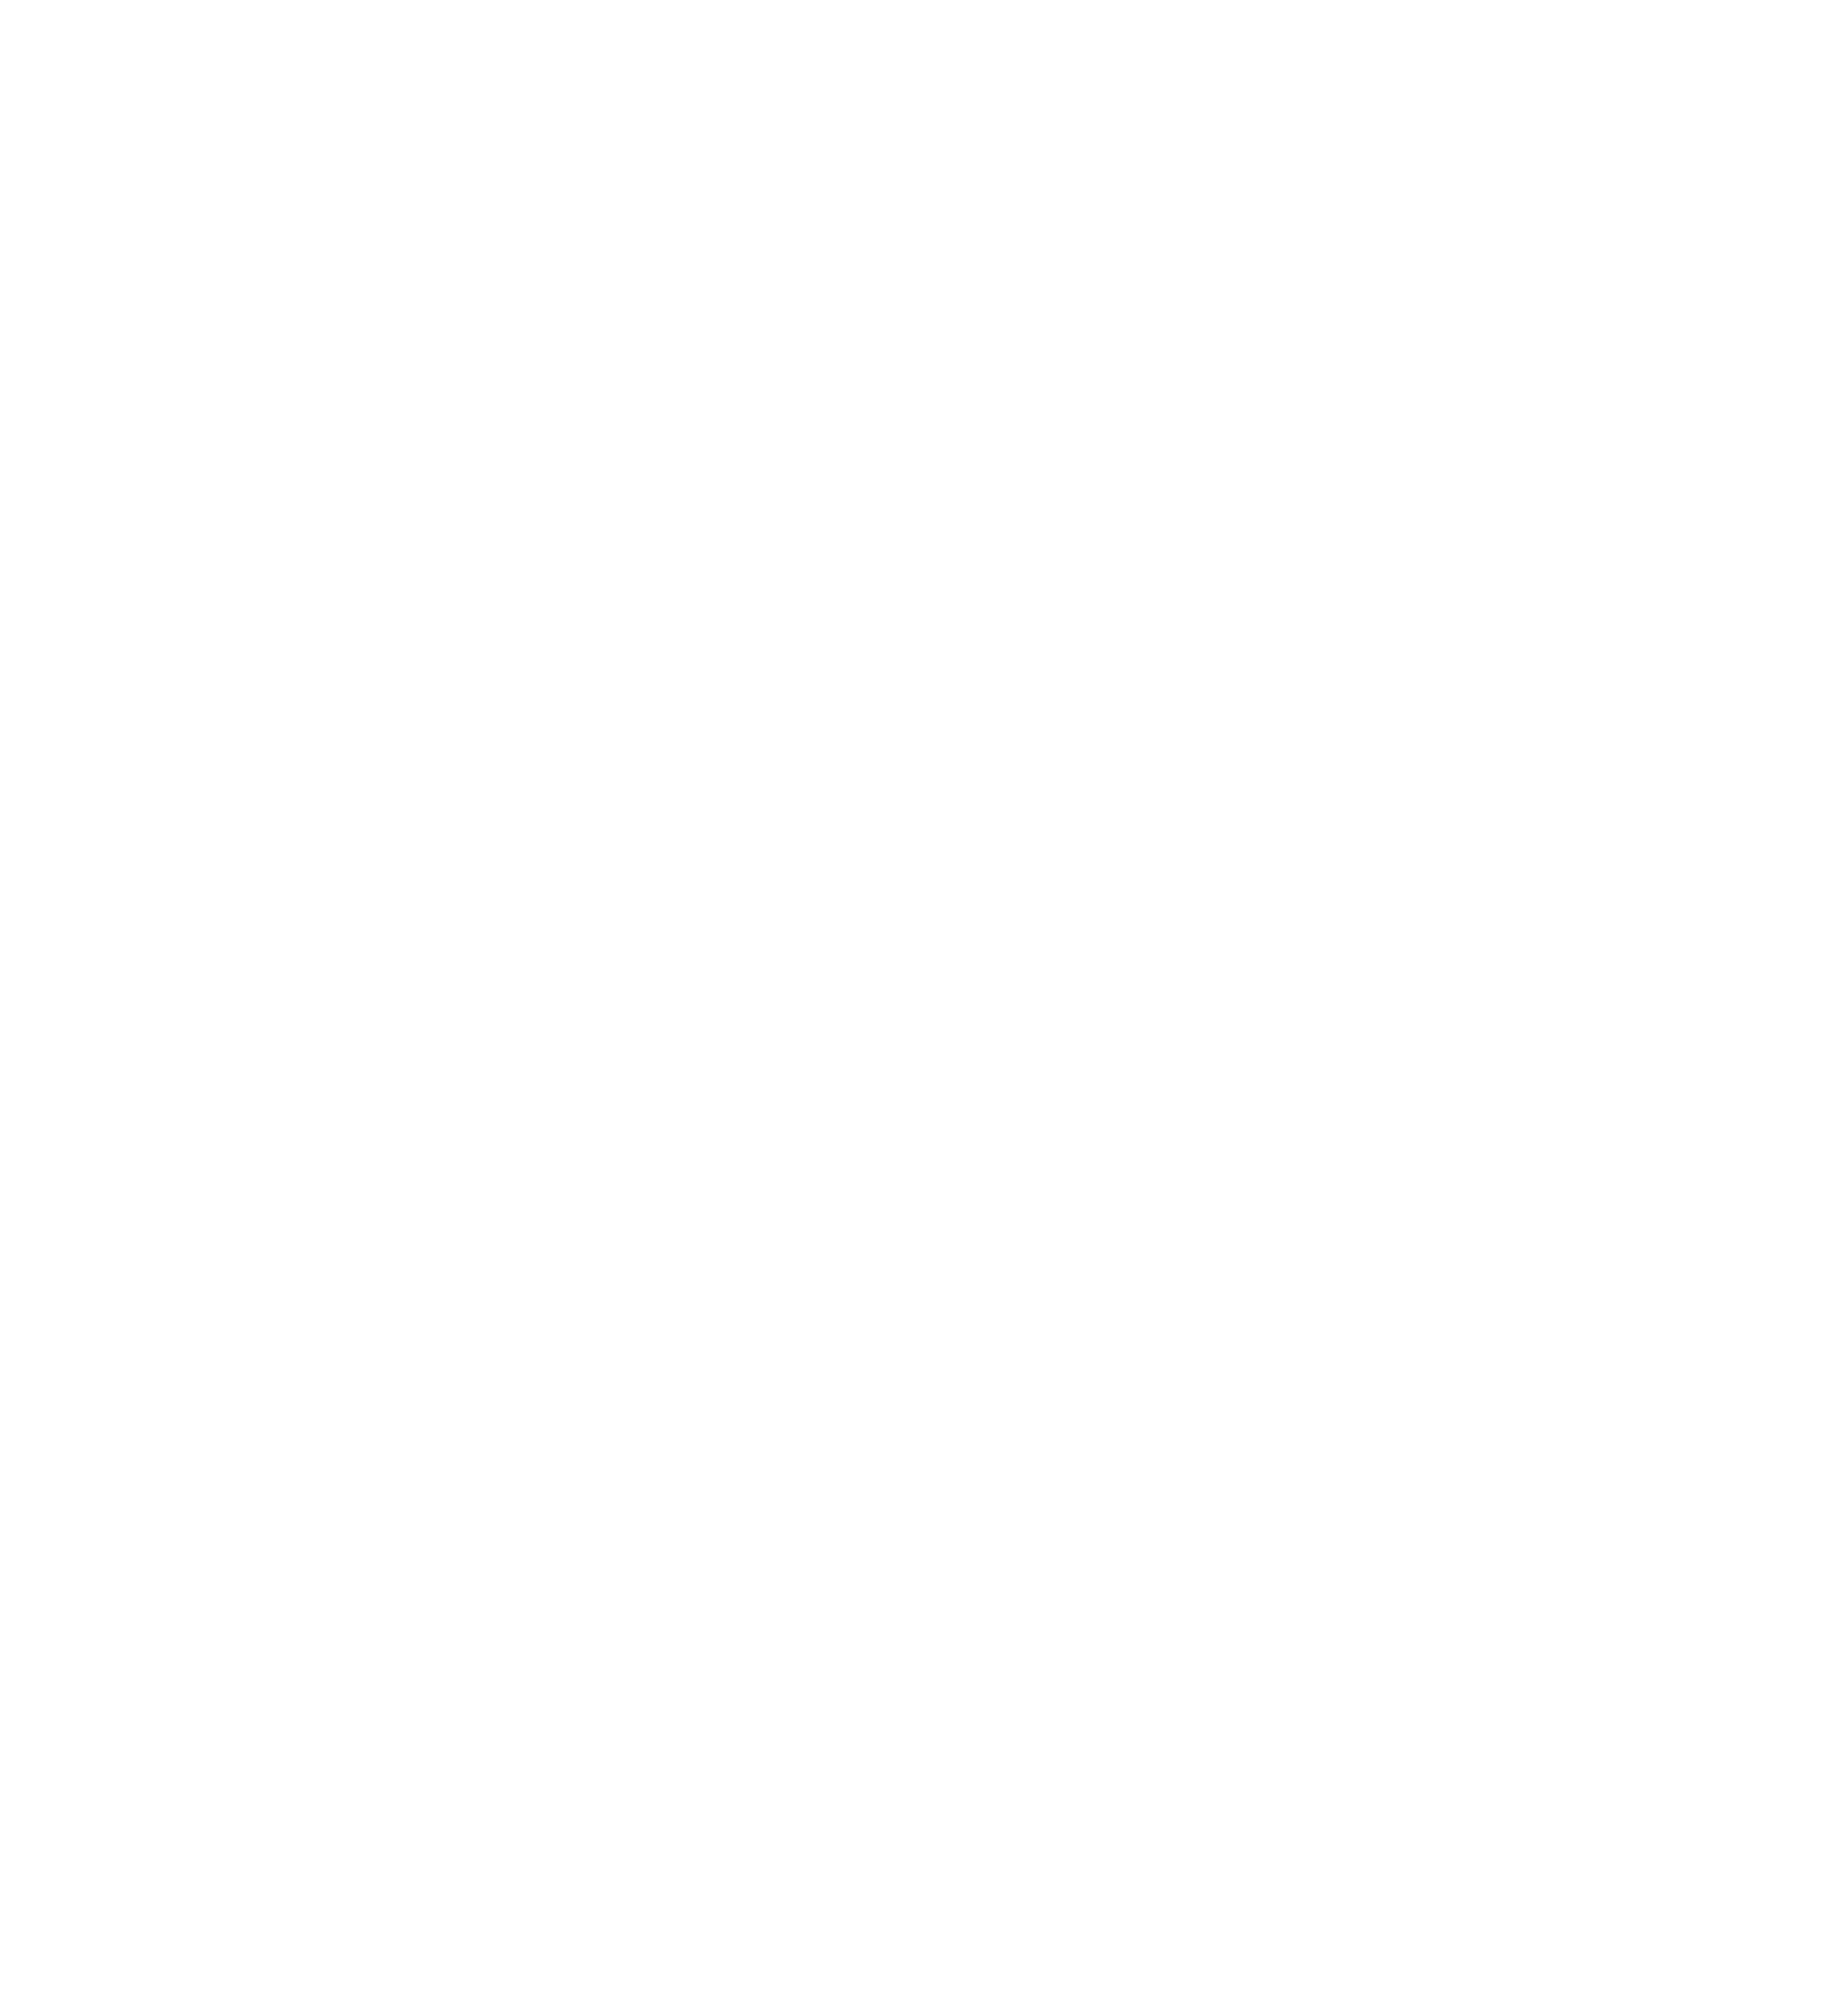 Guerrieri Tour